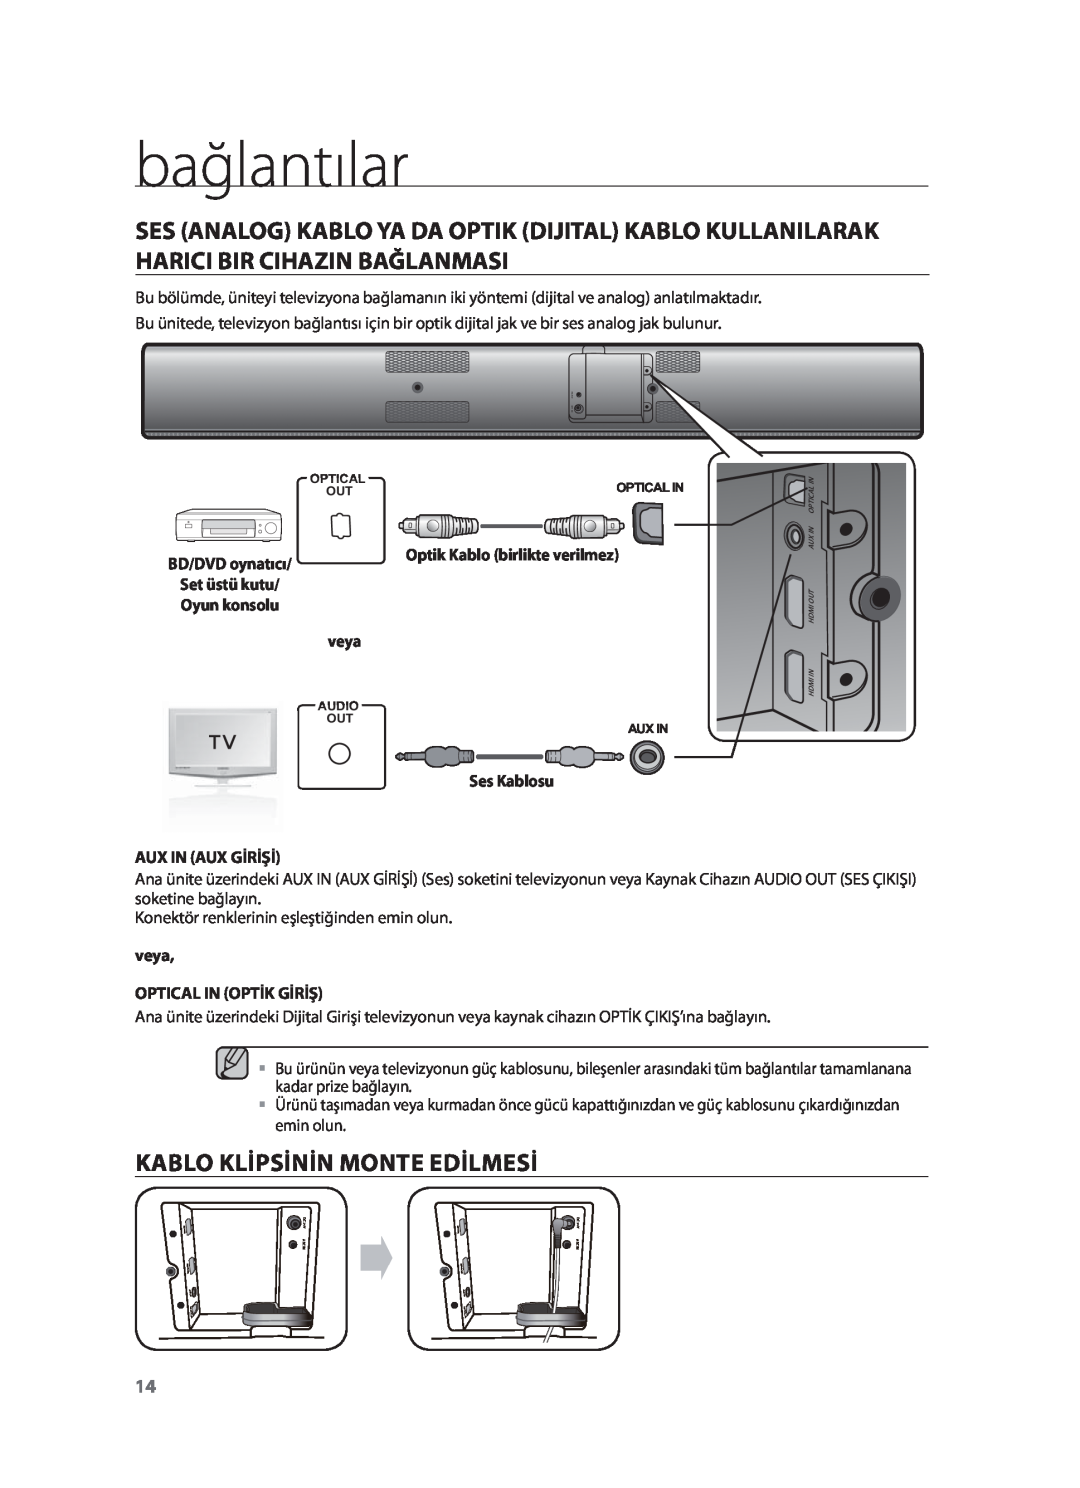 Samsung HW-F751/XN manual Kablo Klipsinin Monte Edilmesi, bağlantılar, Aux In Aux Girişi, veya OPTICAL IN OPTİK GİRİŞ 